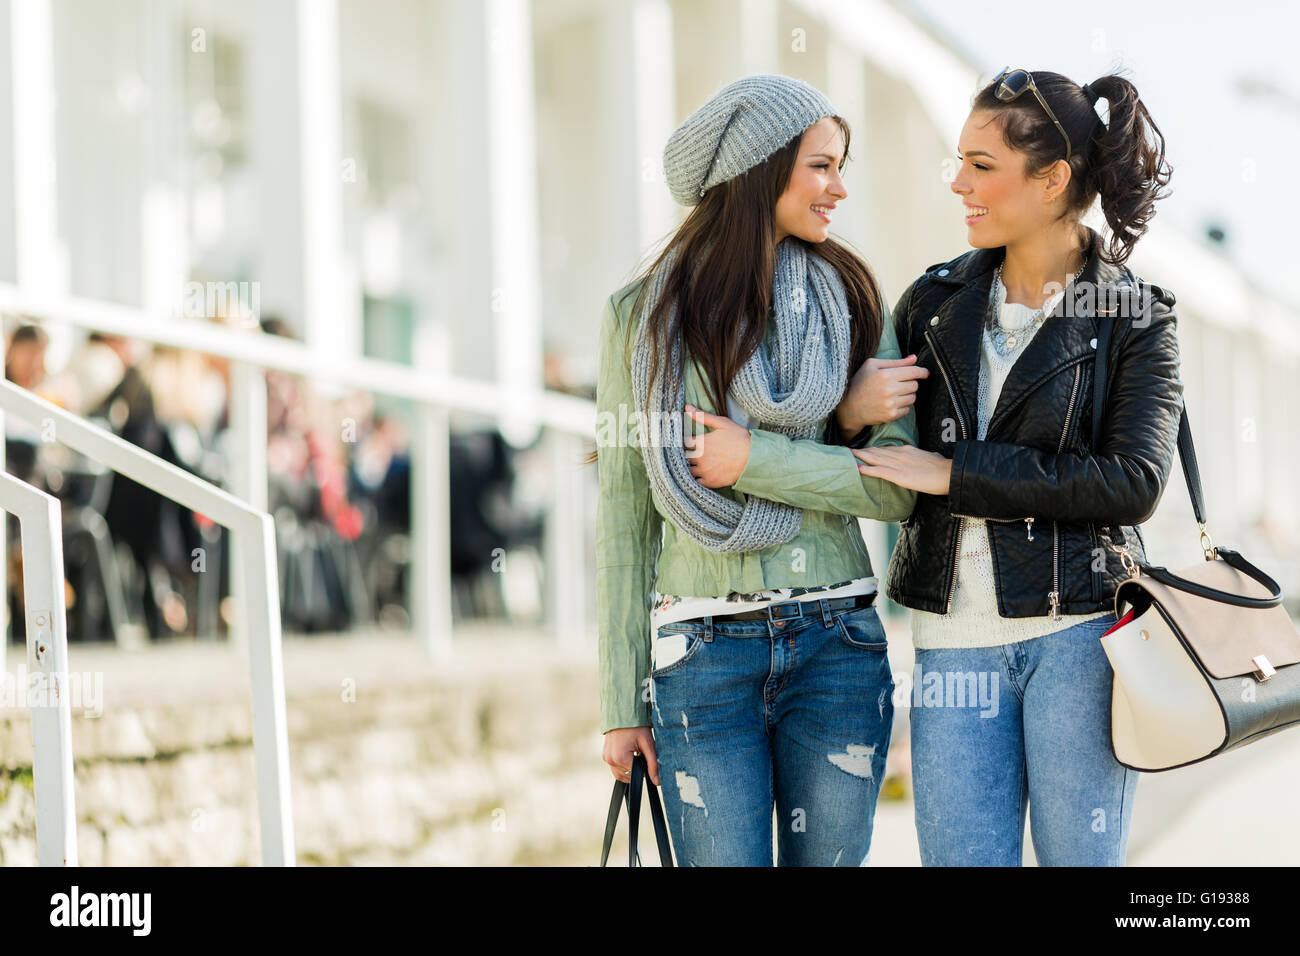 Zwei junge Frauen zu Fuß und shopping glücklich beim betrachten einander Stockfoto